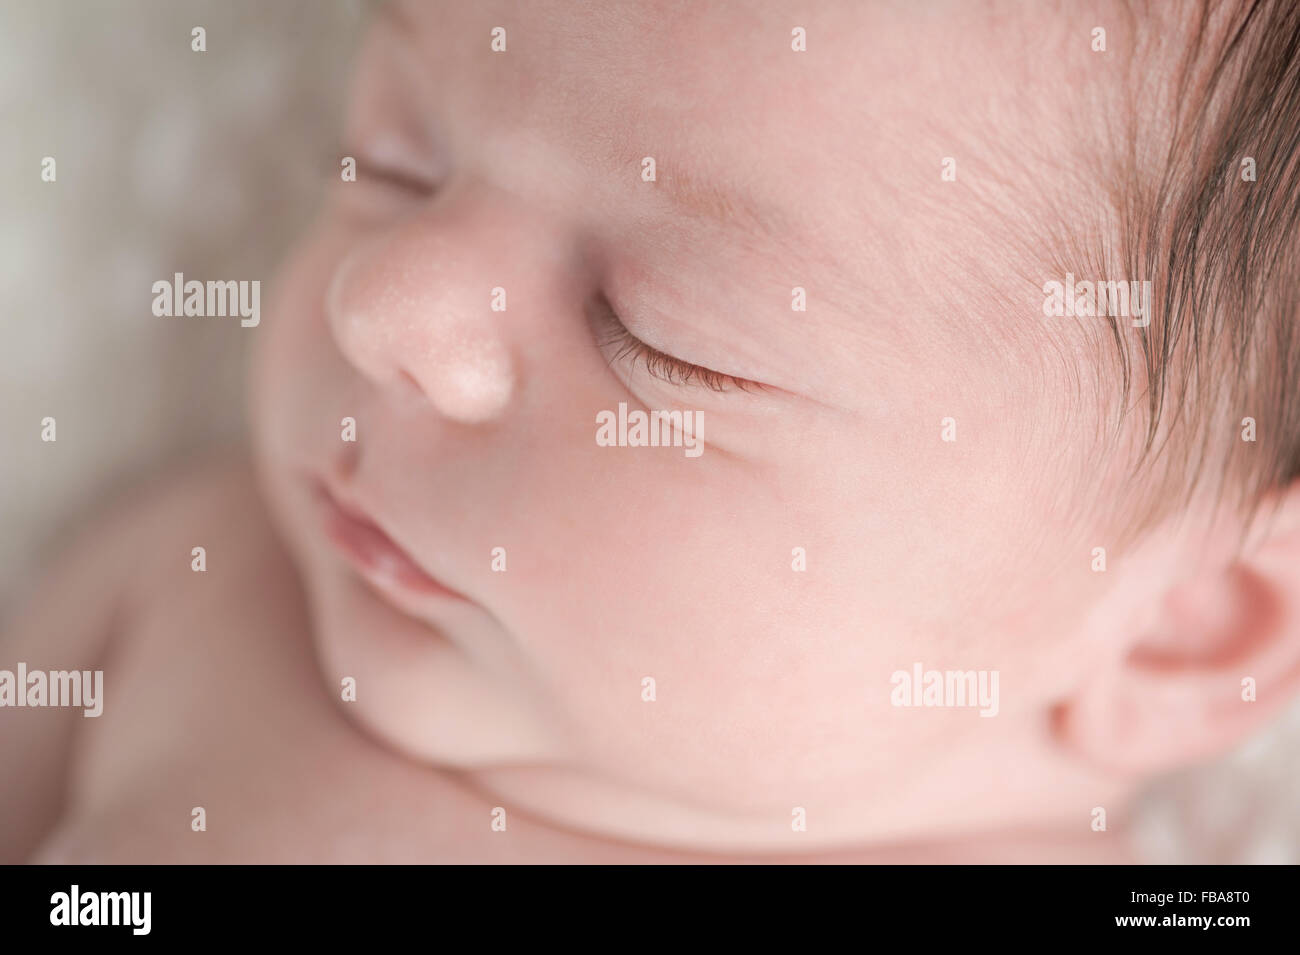 Ein neugeborenes Baby junge Gesicht Nahaufnahme Schuss Stockfoto